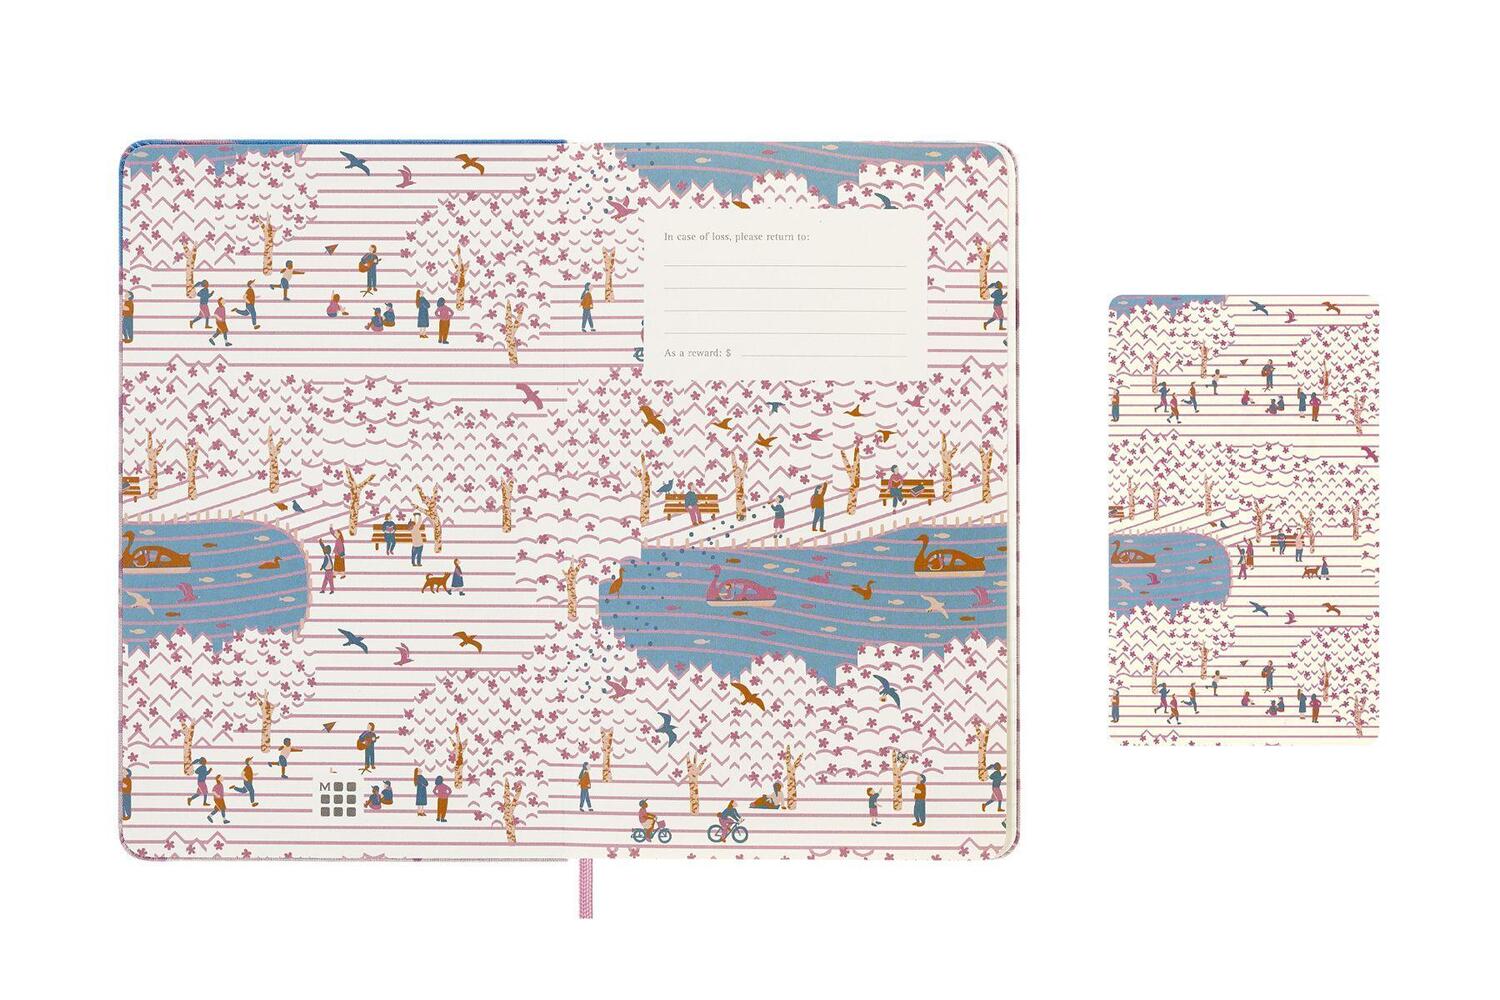 Bild: 8056598851434 | Moleskine Limited Edition Notebook Sakura, Large, Ruled, Bicycle,...